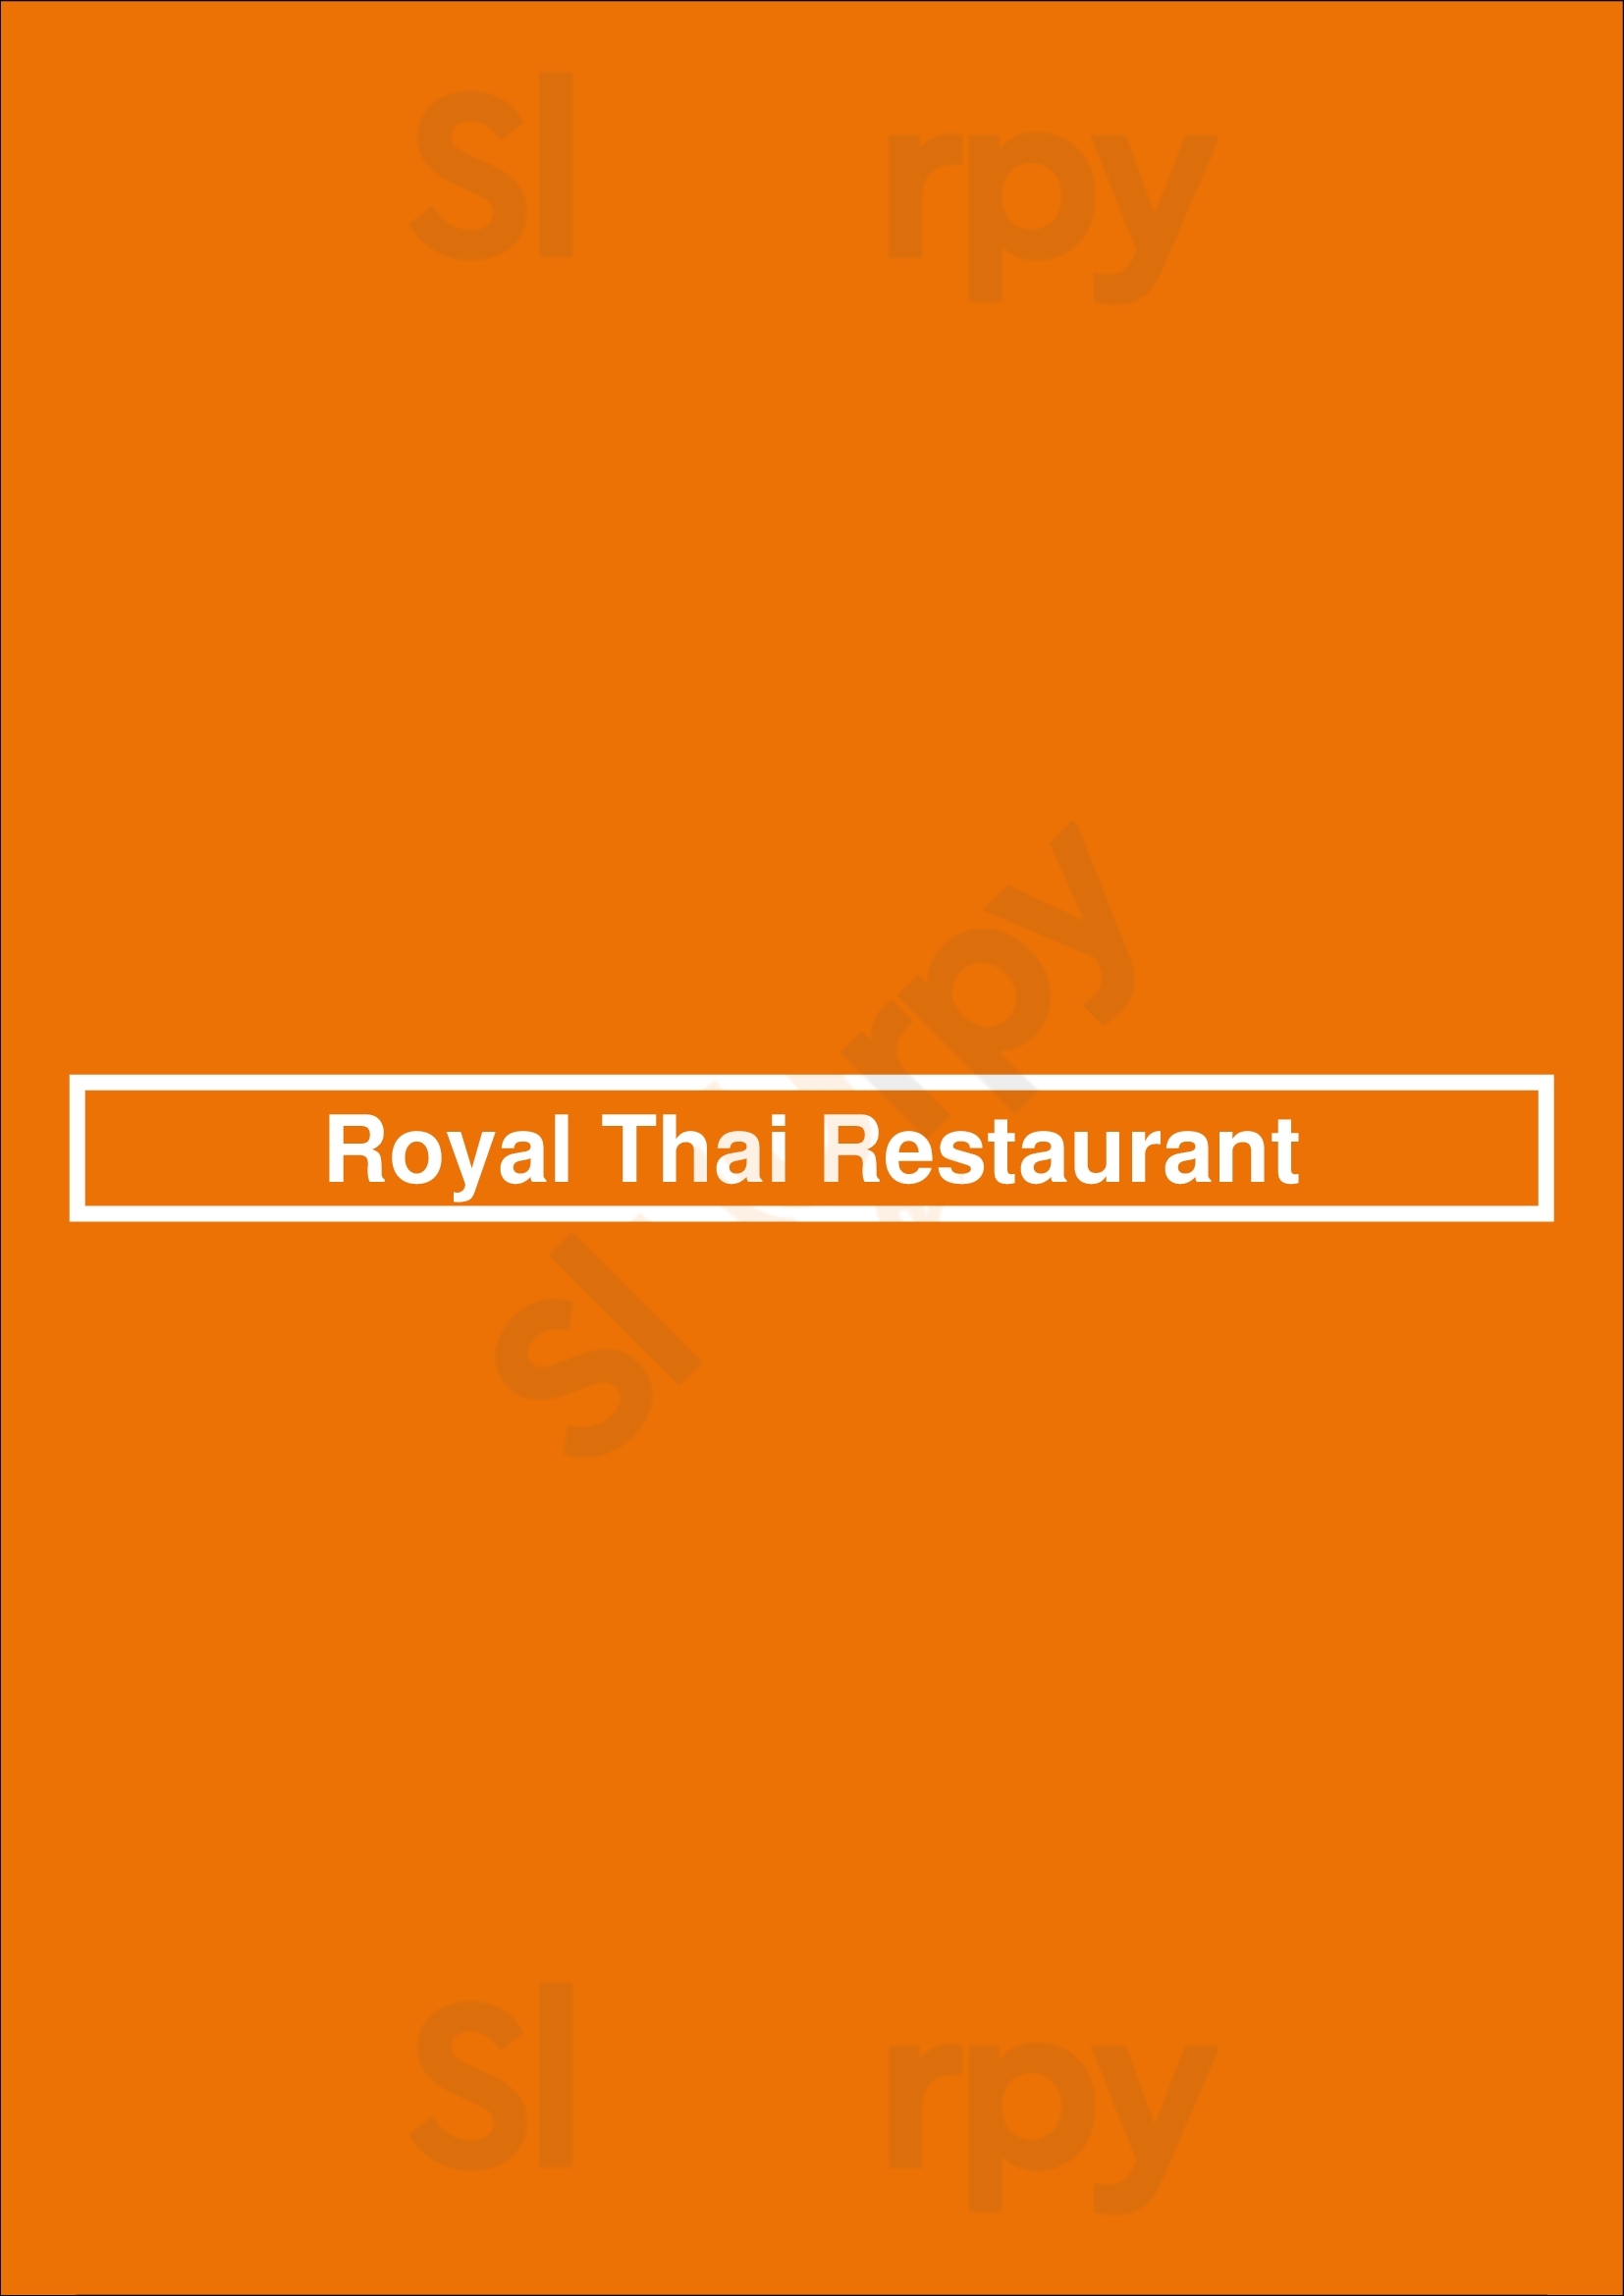 Royal Thai Restaurant Amsterdam Menu - 1